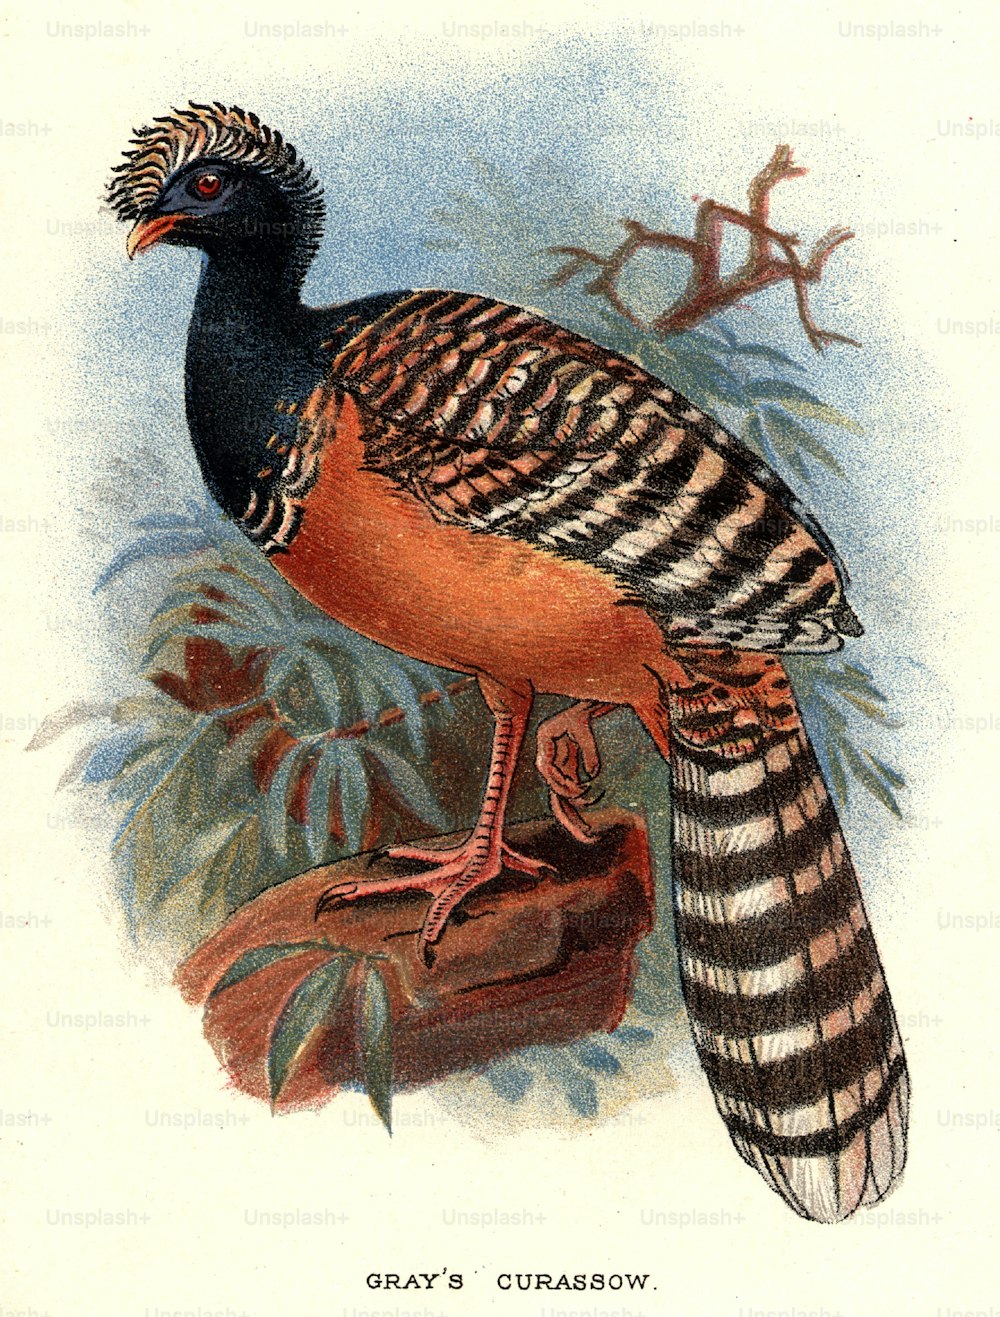 um 1800: Gray's Curassow, ein großer truthahnähnlicher Vogel Südamerikas.  (Foto von Hulton Archive / Getty Images)